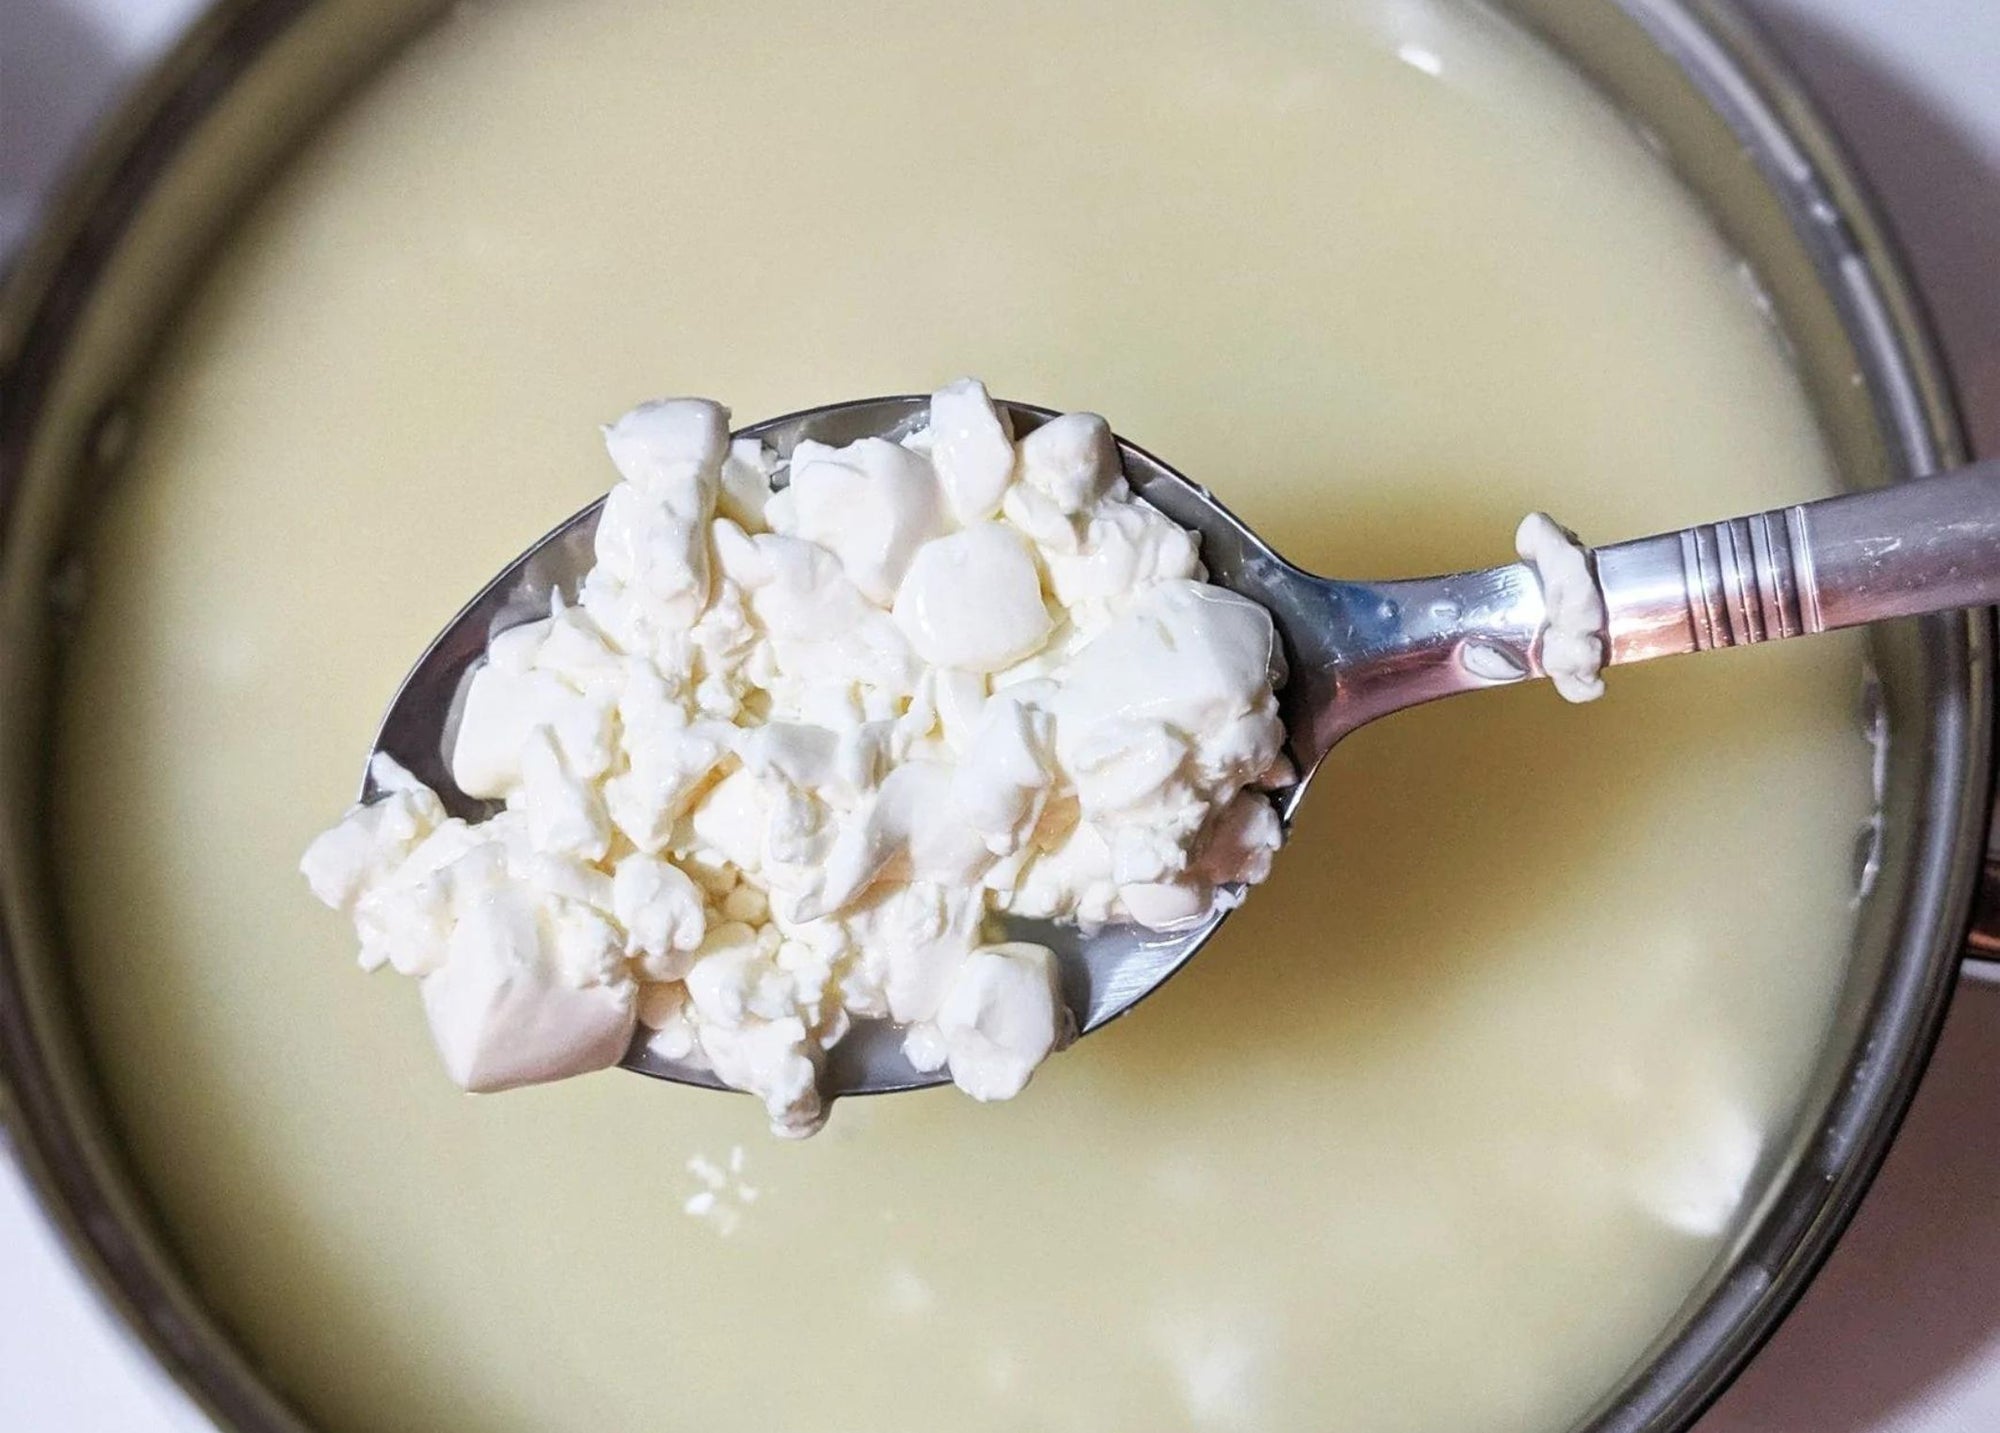 5 Reasons You Should Make Cheese at Home